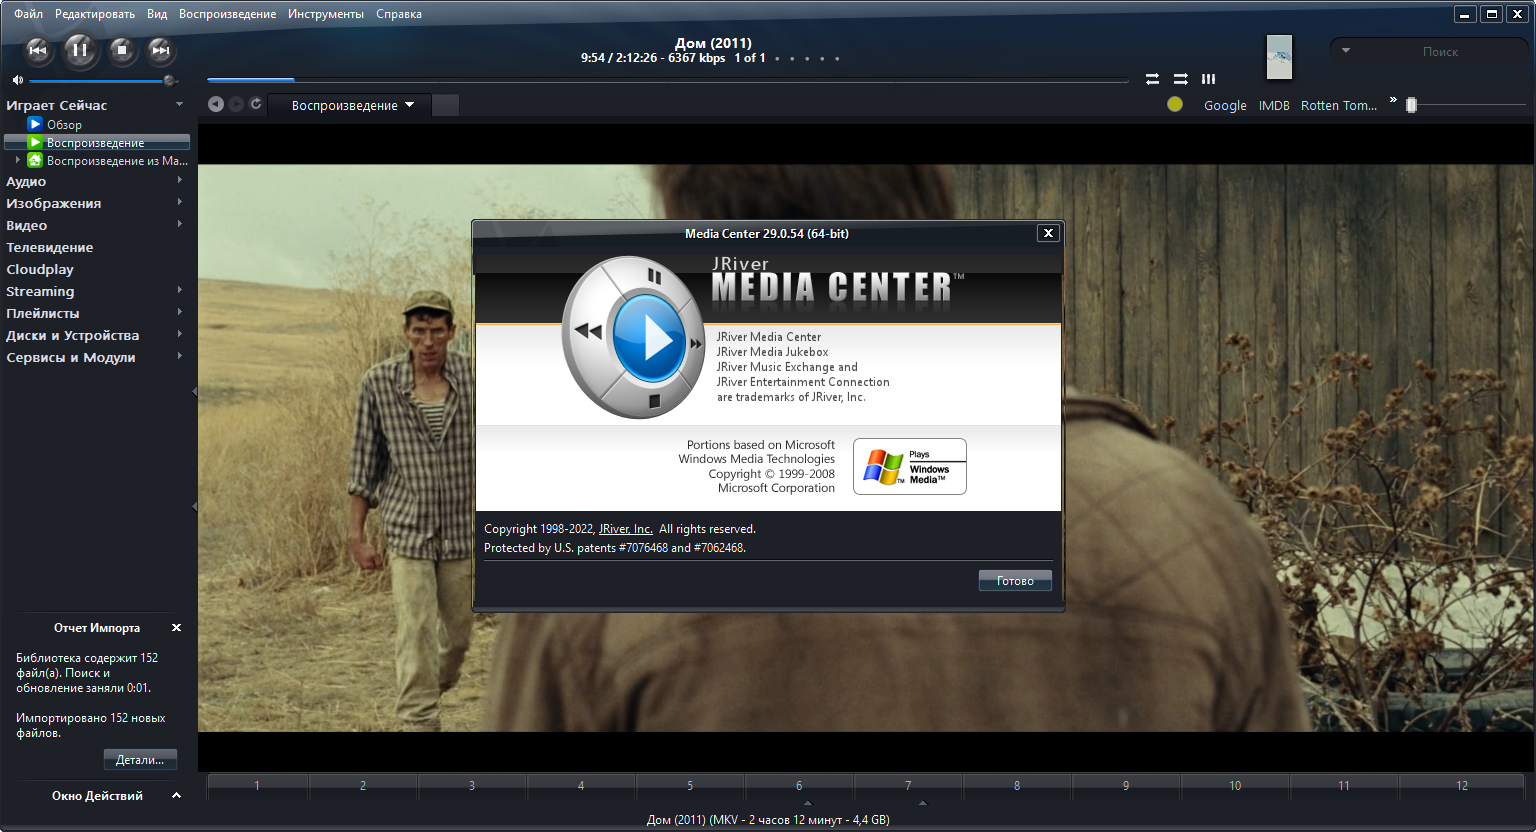 instal the new version for apple JRiver Media Center 31.0.23